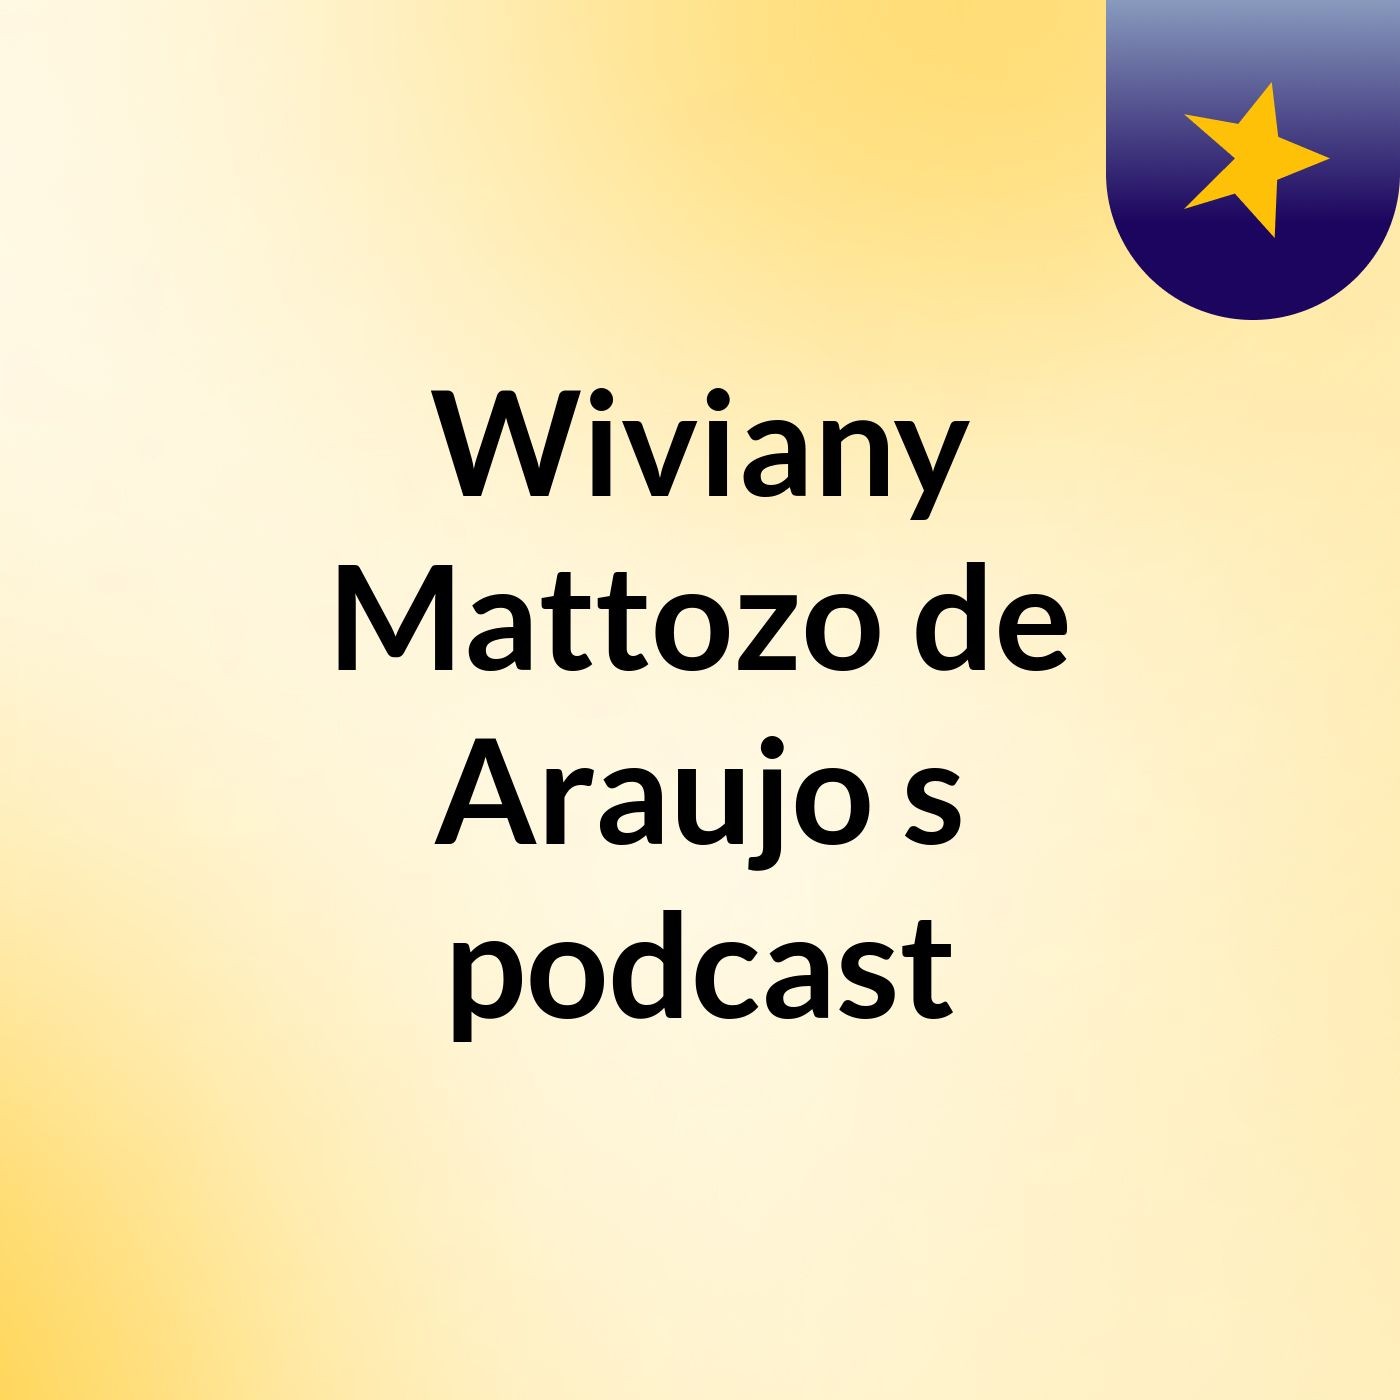 Wiviany Mattozo de Araujo's podcast